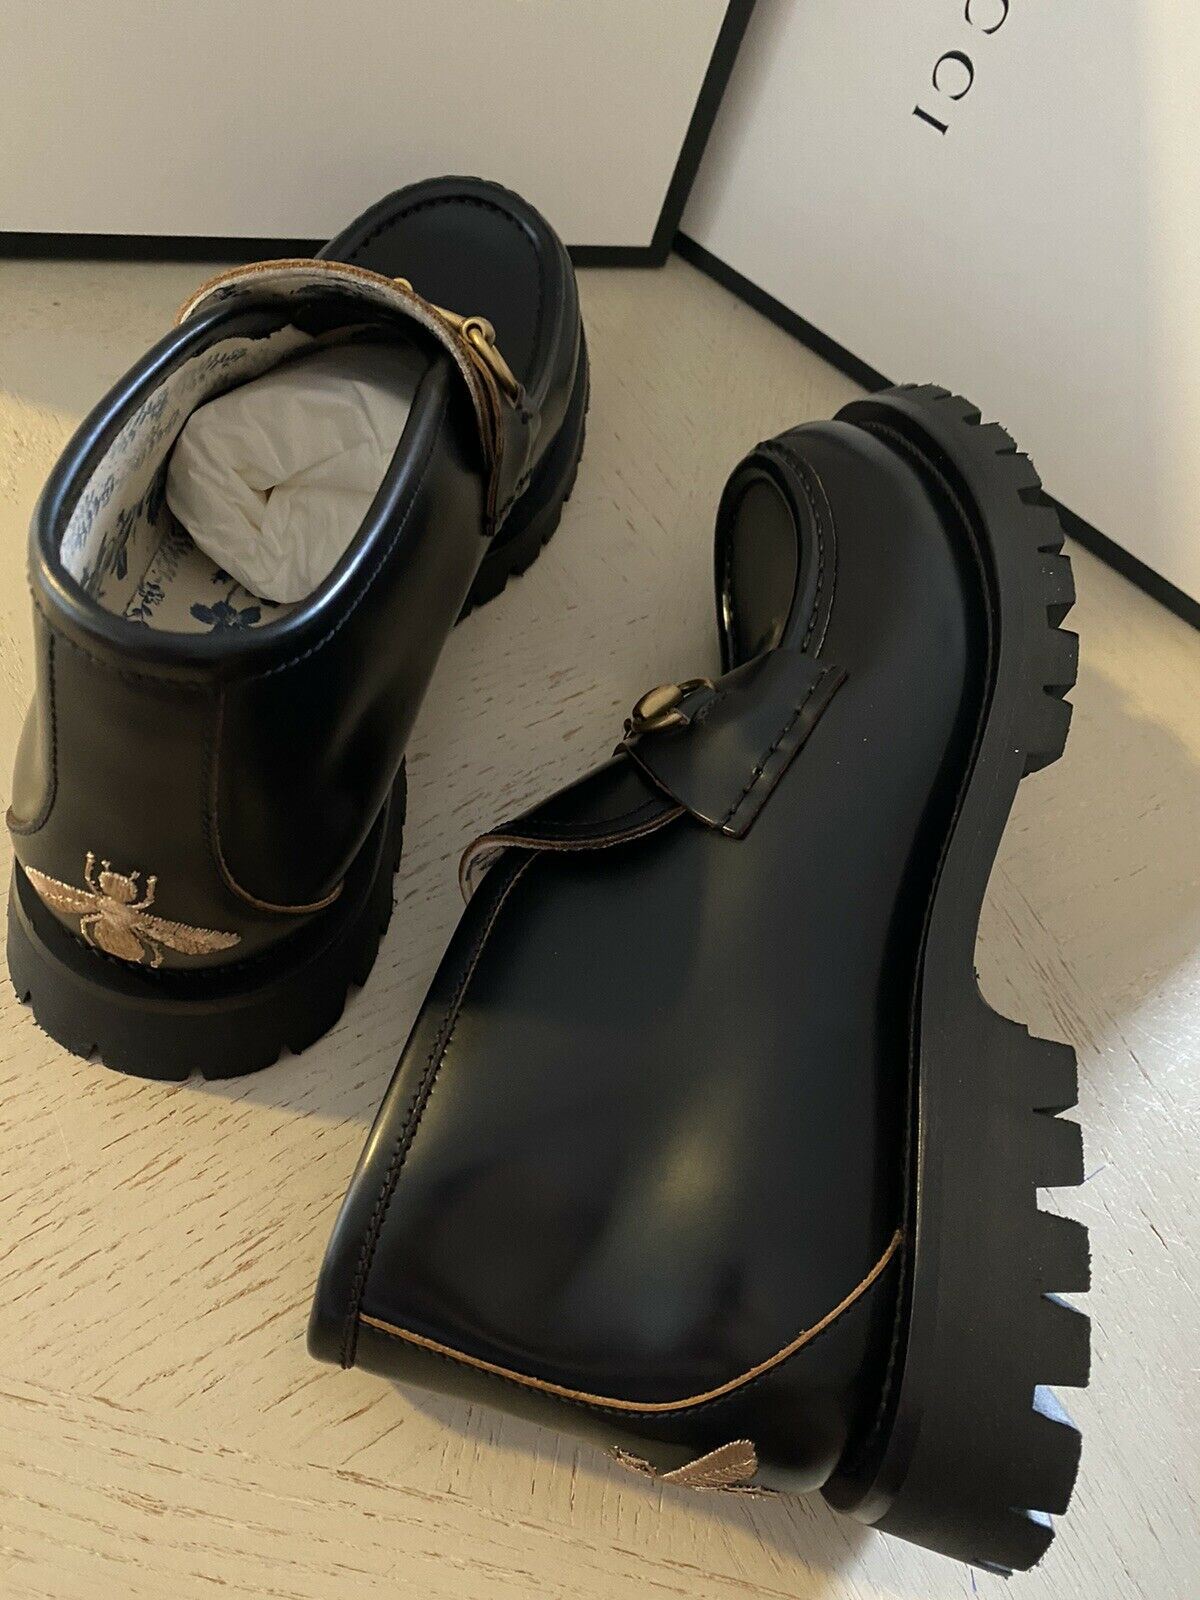 NIB $ 1750 Gucci Herren Cordovan Lux Leder Stiefeletten Schuhe Schwarz 11 US / 10 UK